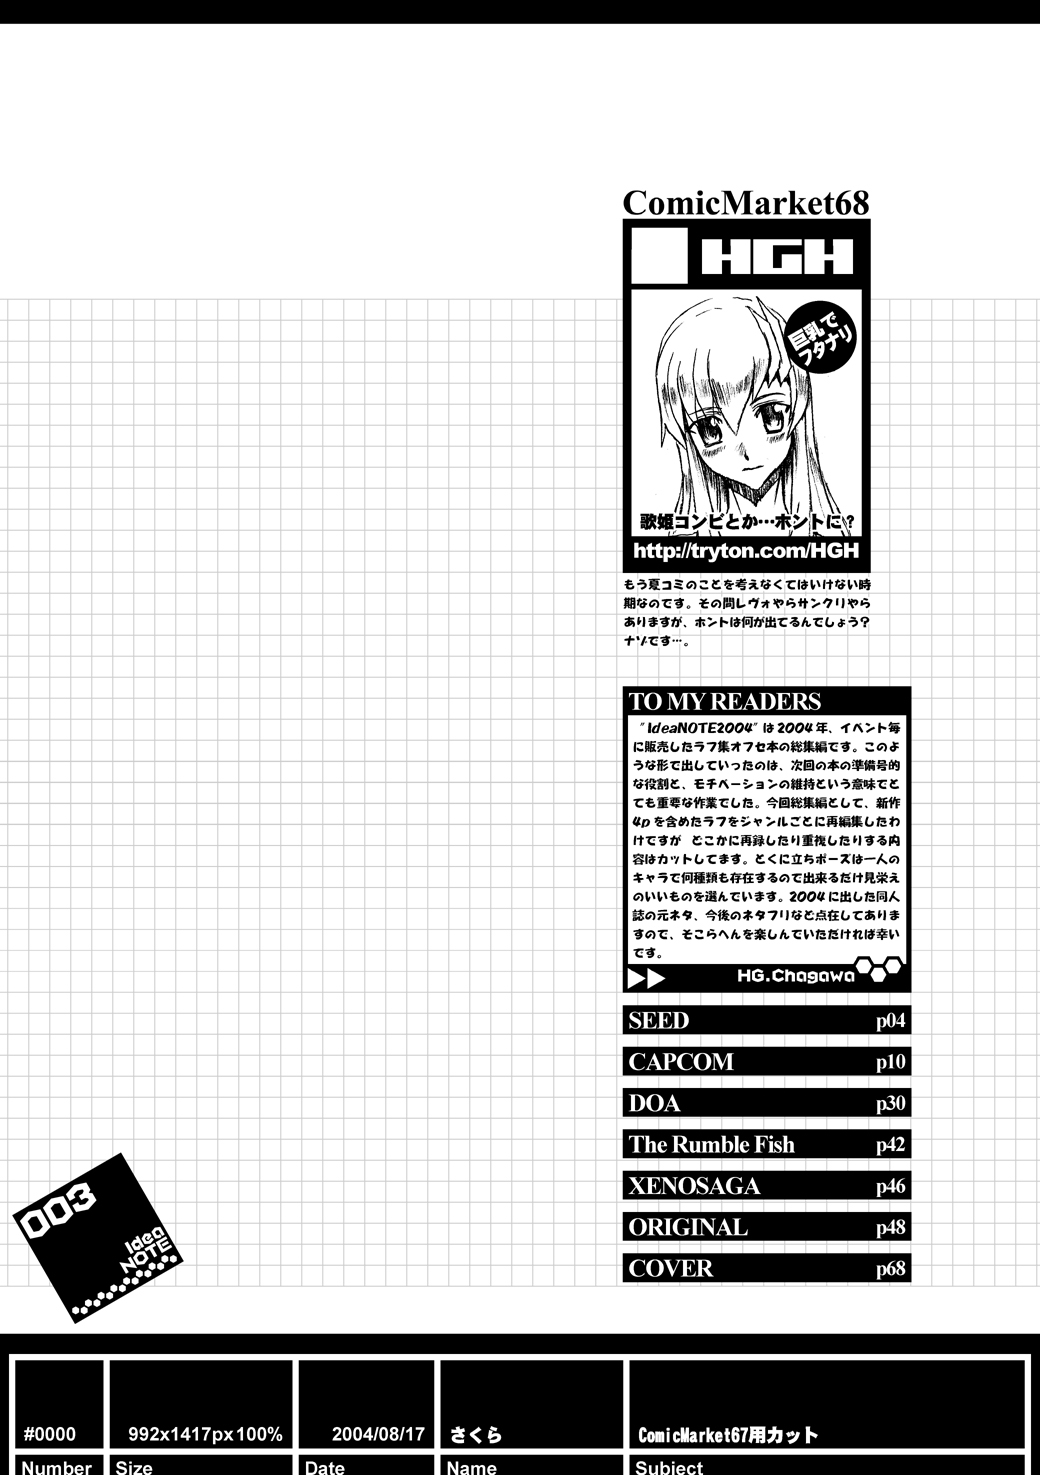 (サンクリ26) [HGH (HG茶川)] ideanote 2004